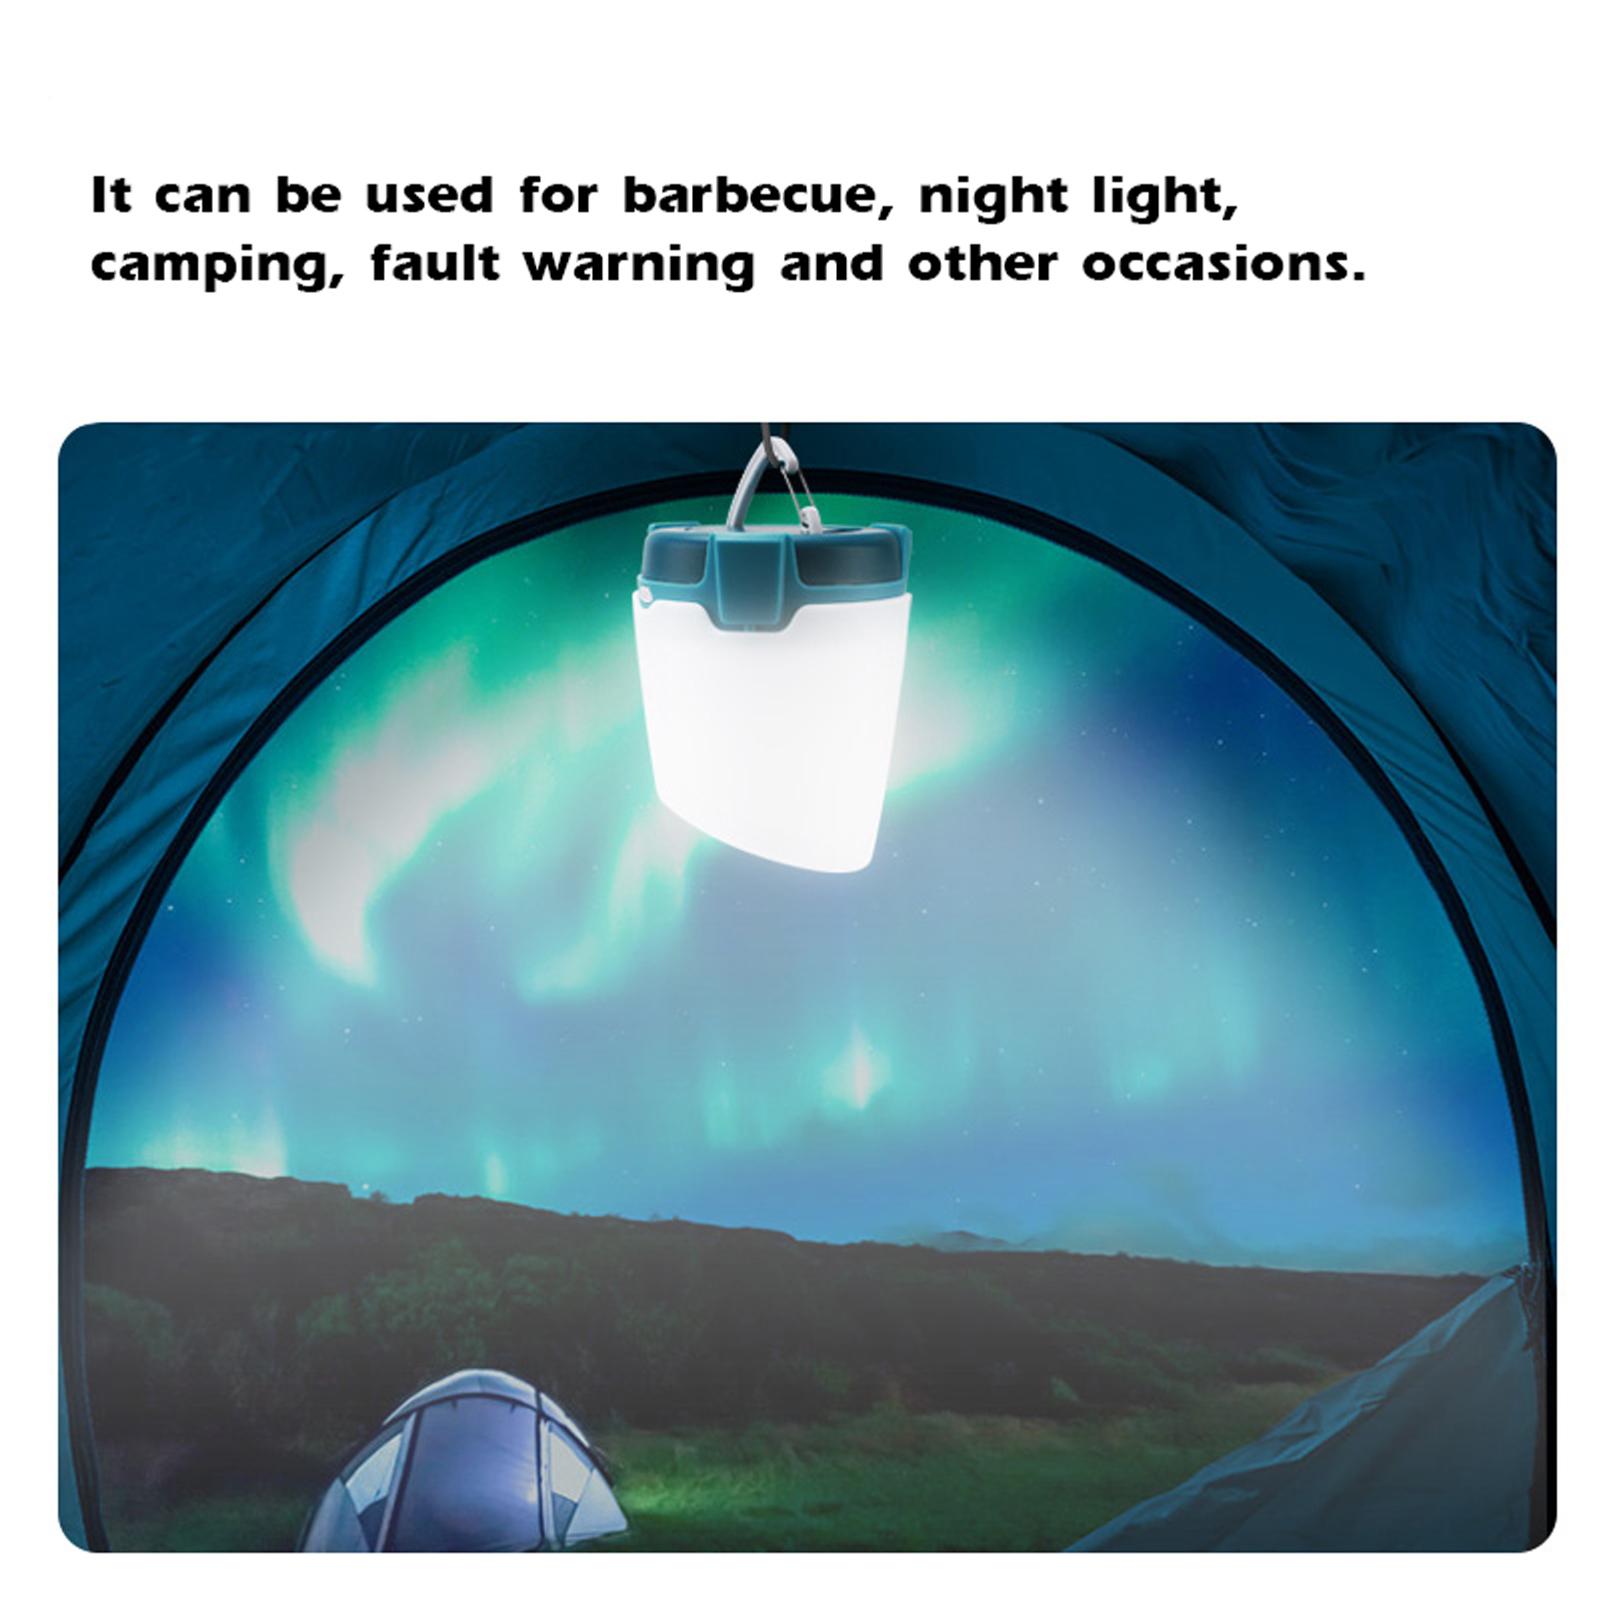 Đèn cắm trại ngoài trời nhiều màu sắc có thể được sử dụng để chiếu sáng cắm trại, dã ngoại